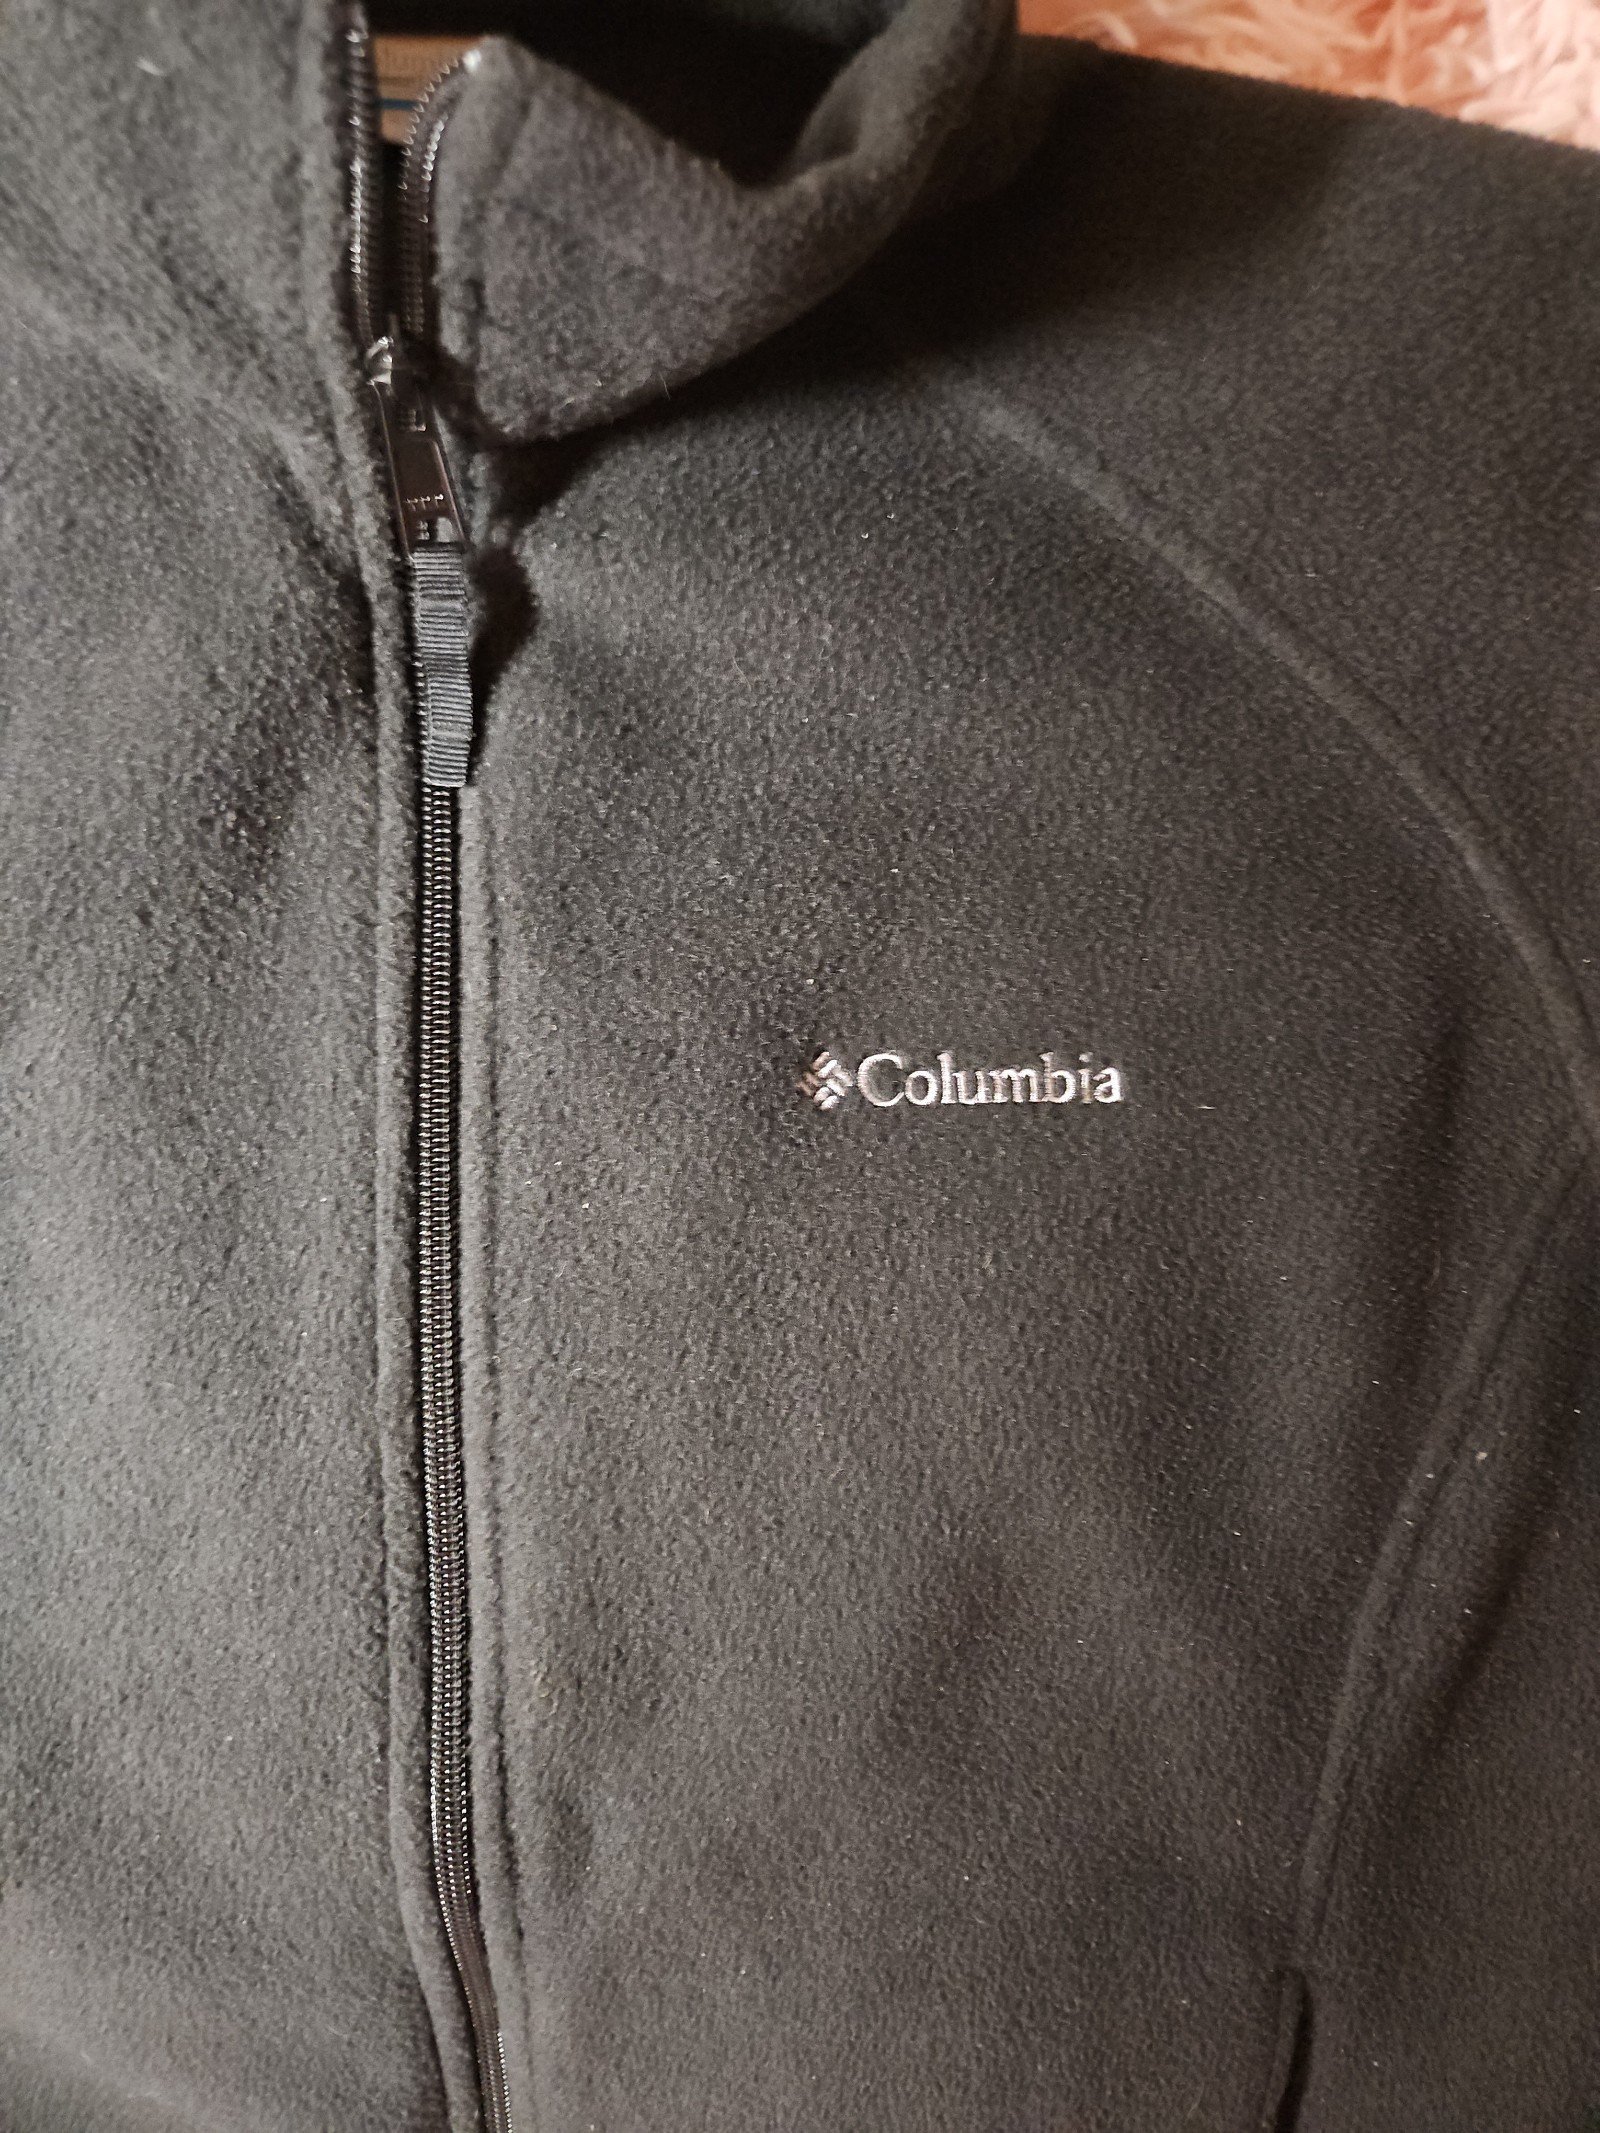 Nice Columbia fleece jacket kwsxe7hM1 Store Online